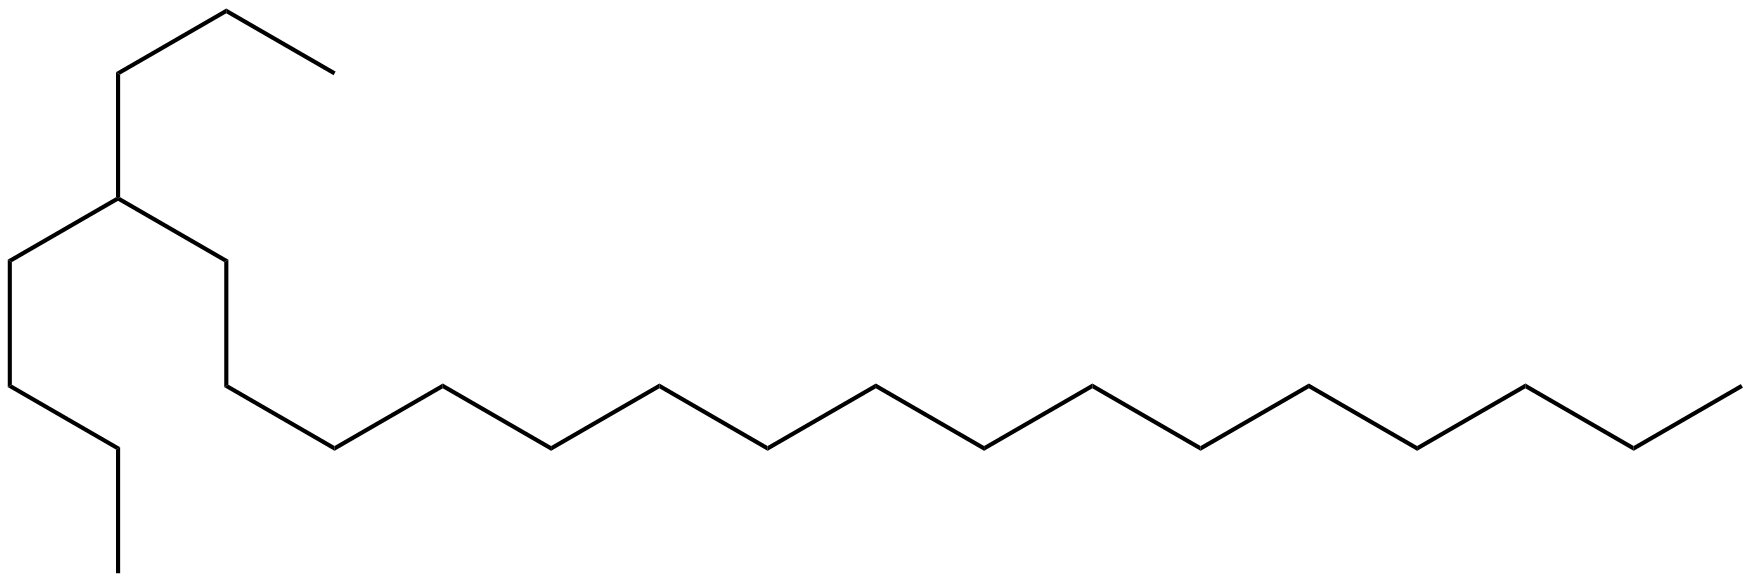 Image of 4-butyleicosane